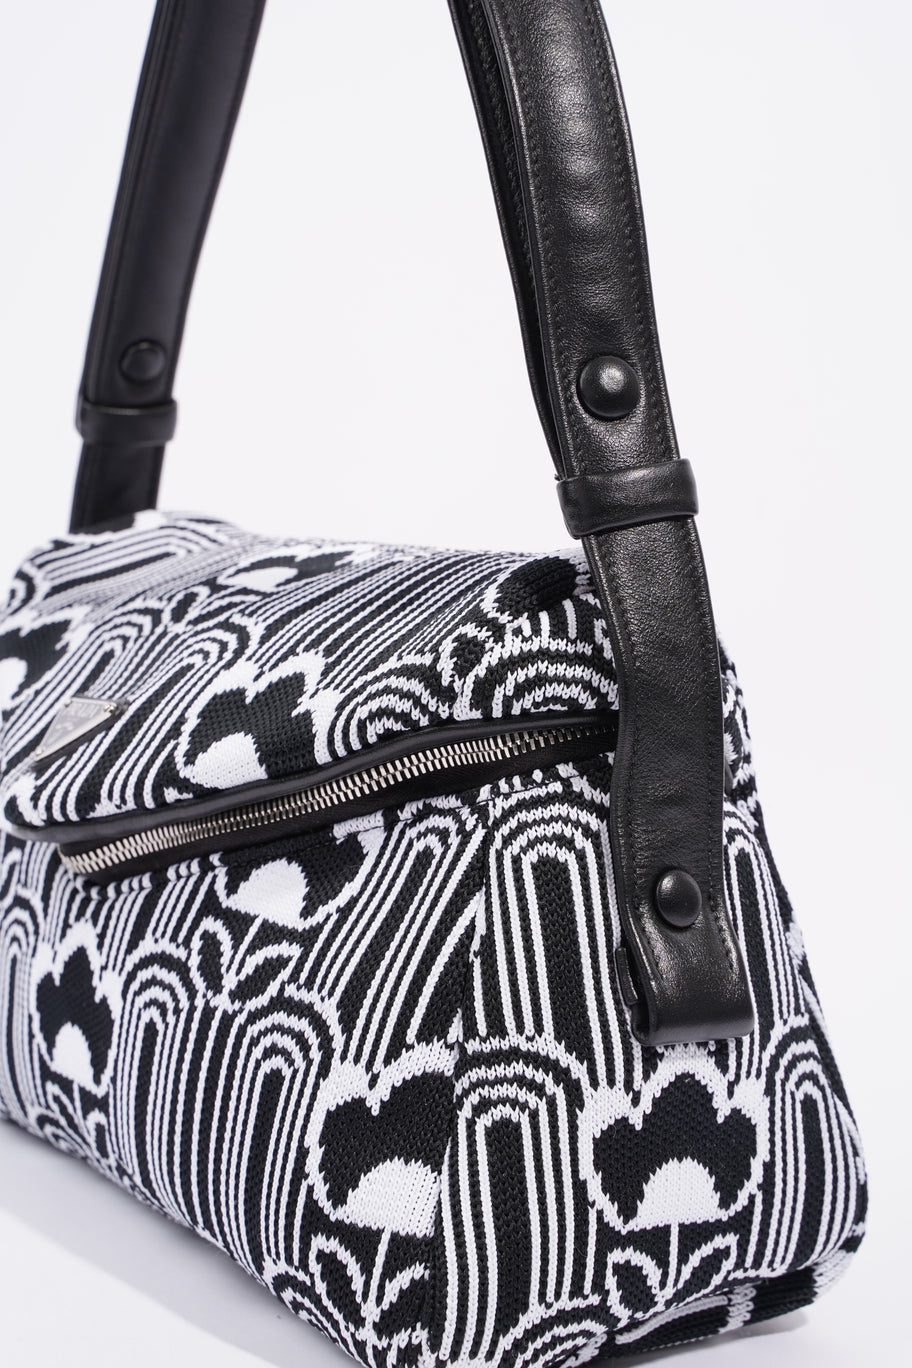 Signaux Jacquard Shoulder Bag Black / White Fabric Image 12